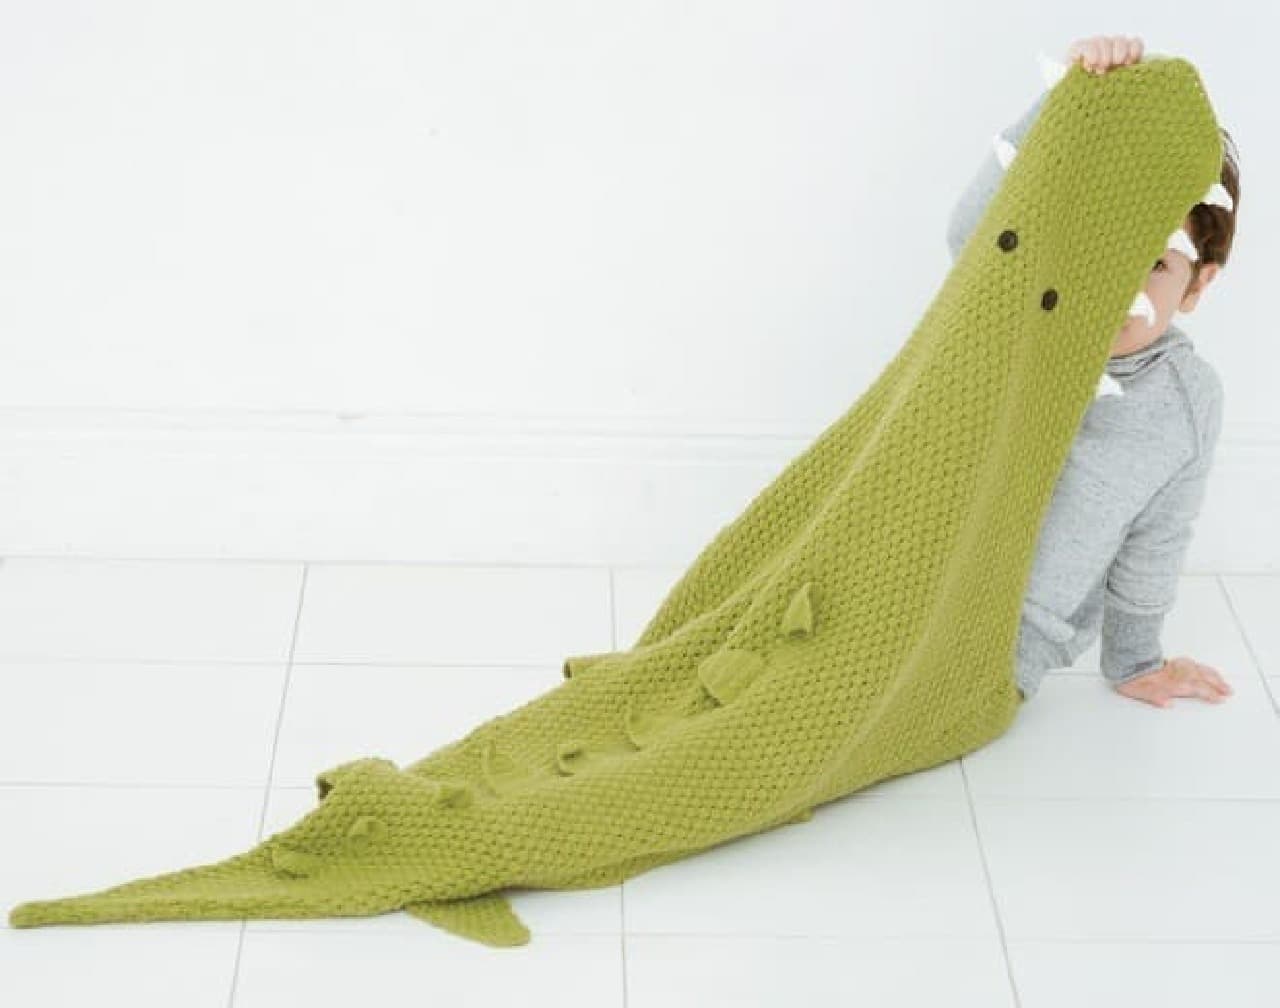 [Mermaid] and [Crocodile] of "Yurukawa Knitted Blanket"